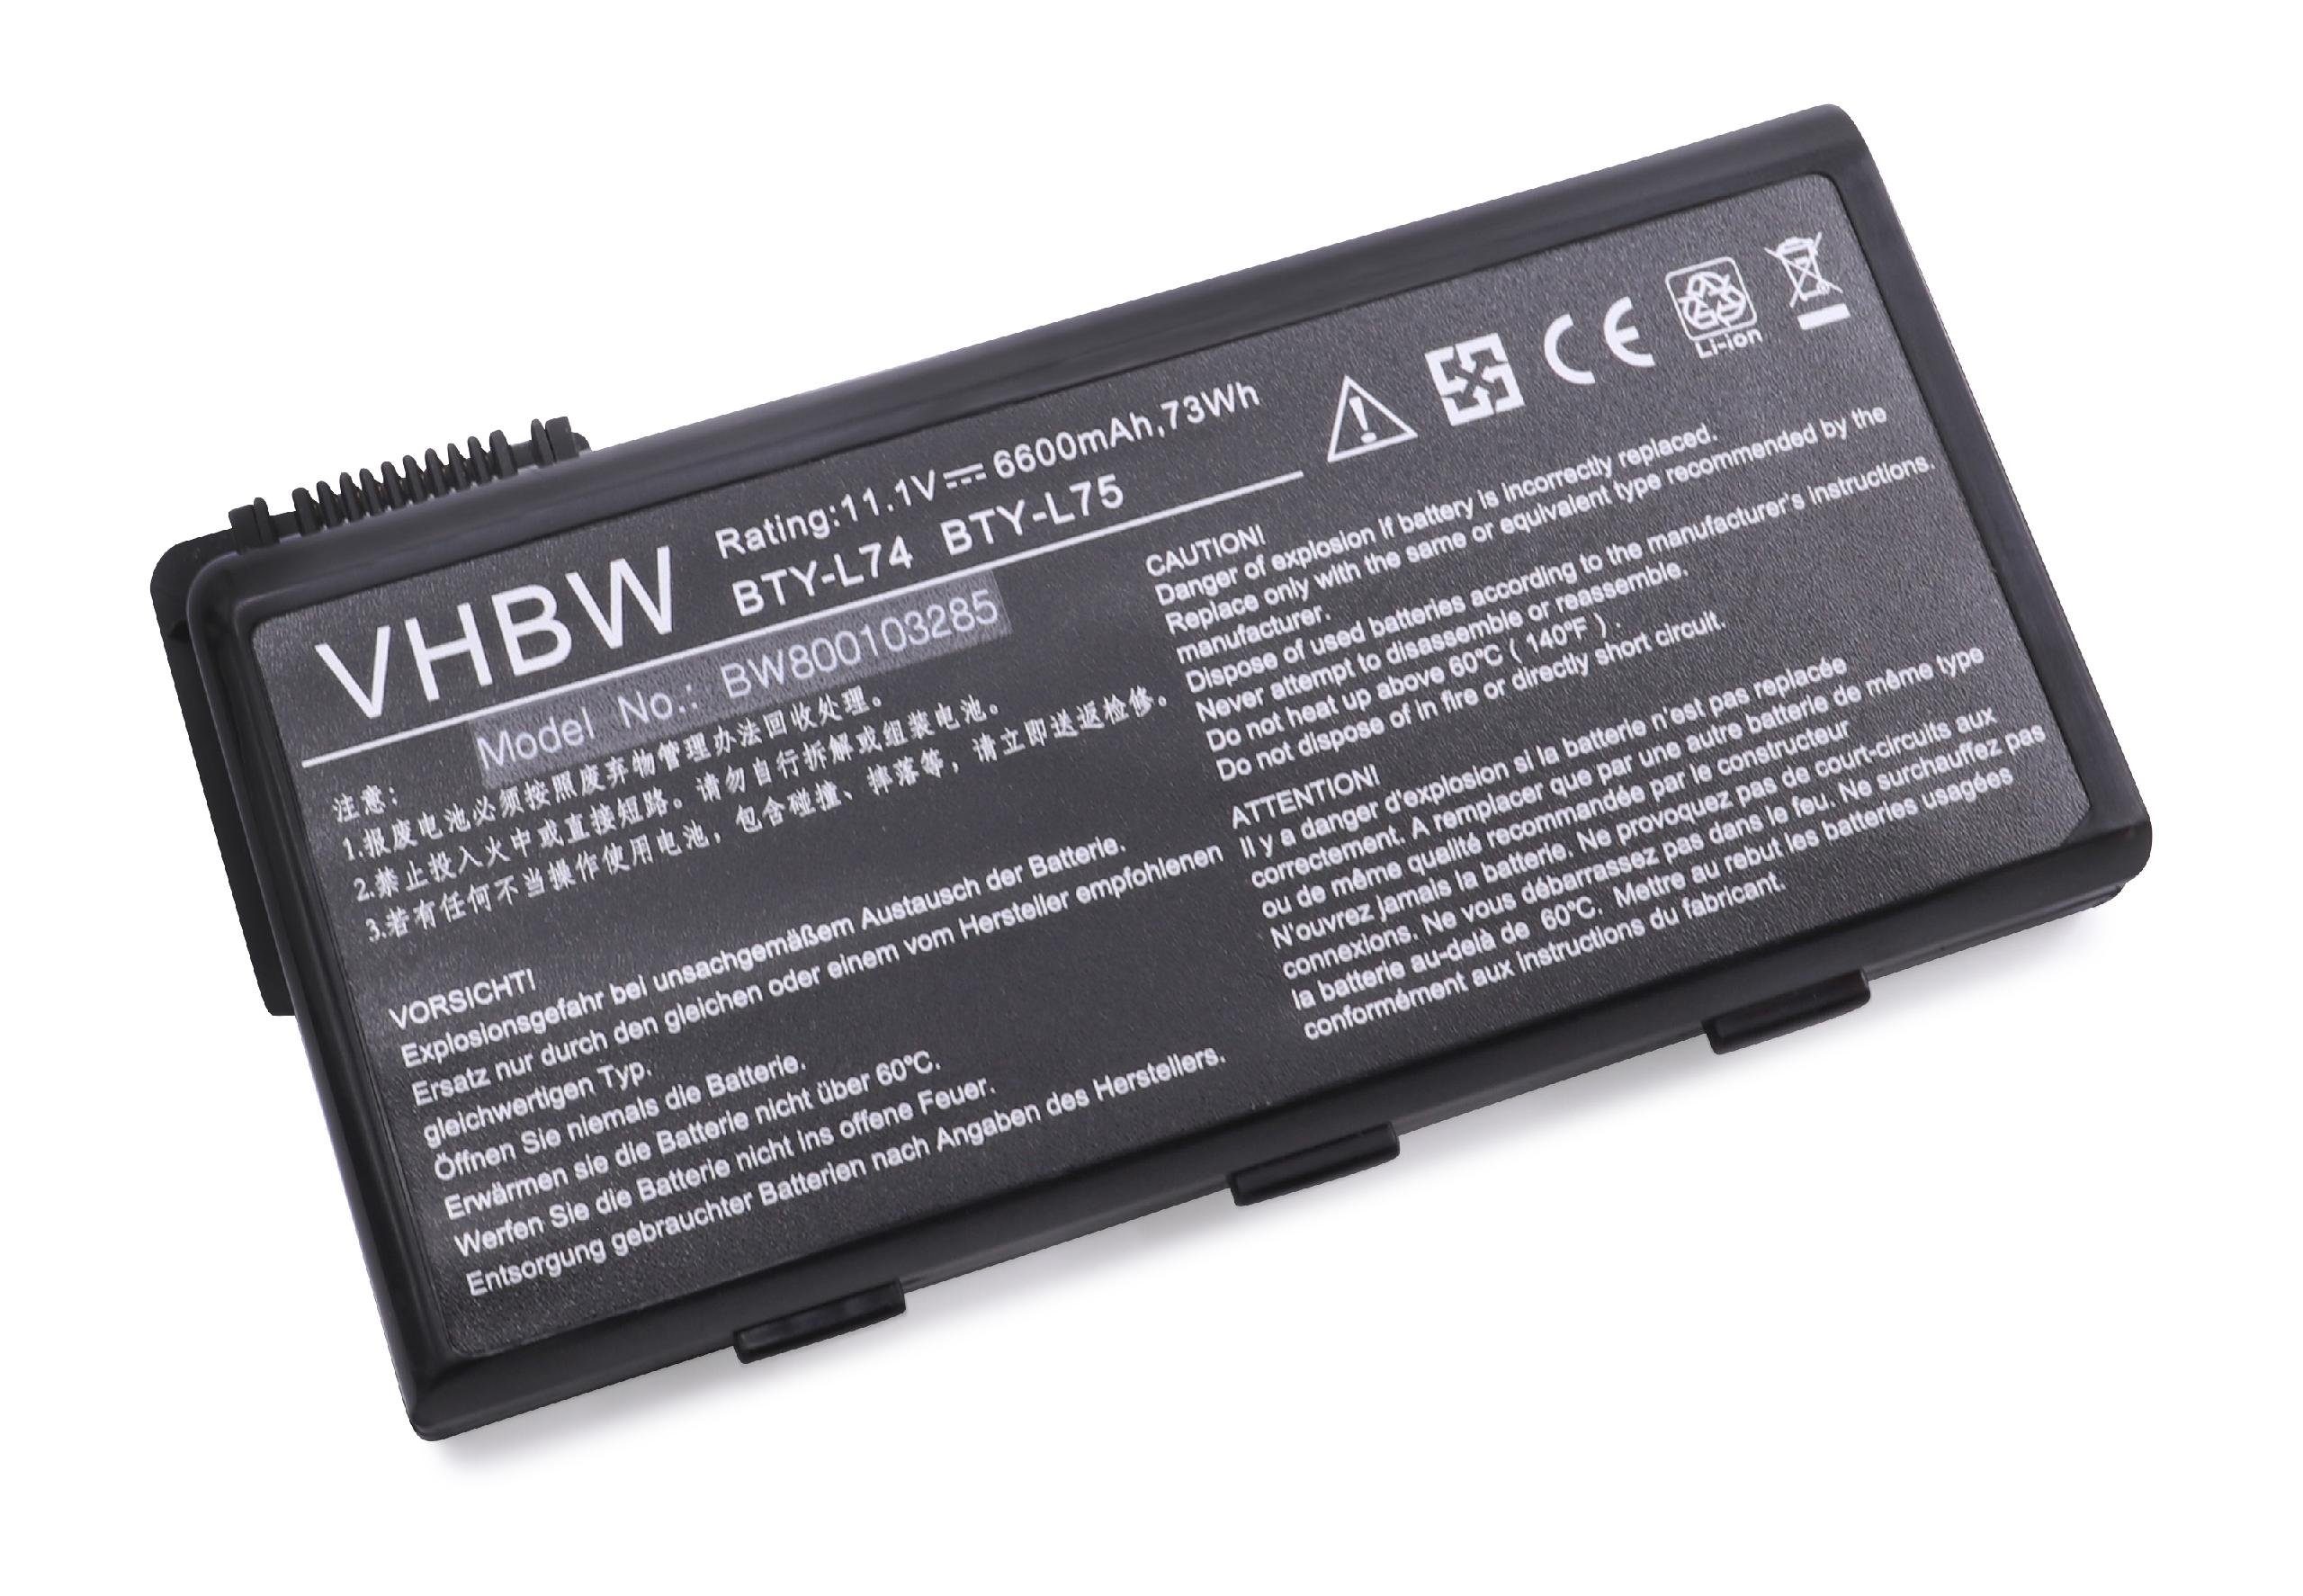 vhbw passend für MSI CX-600-T4343W7P, CX600-064UK, CX605, CX610-050BE, Laptop-Akku 6600 mAh